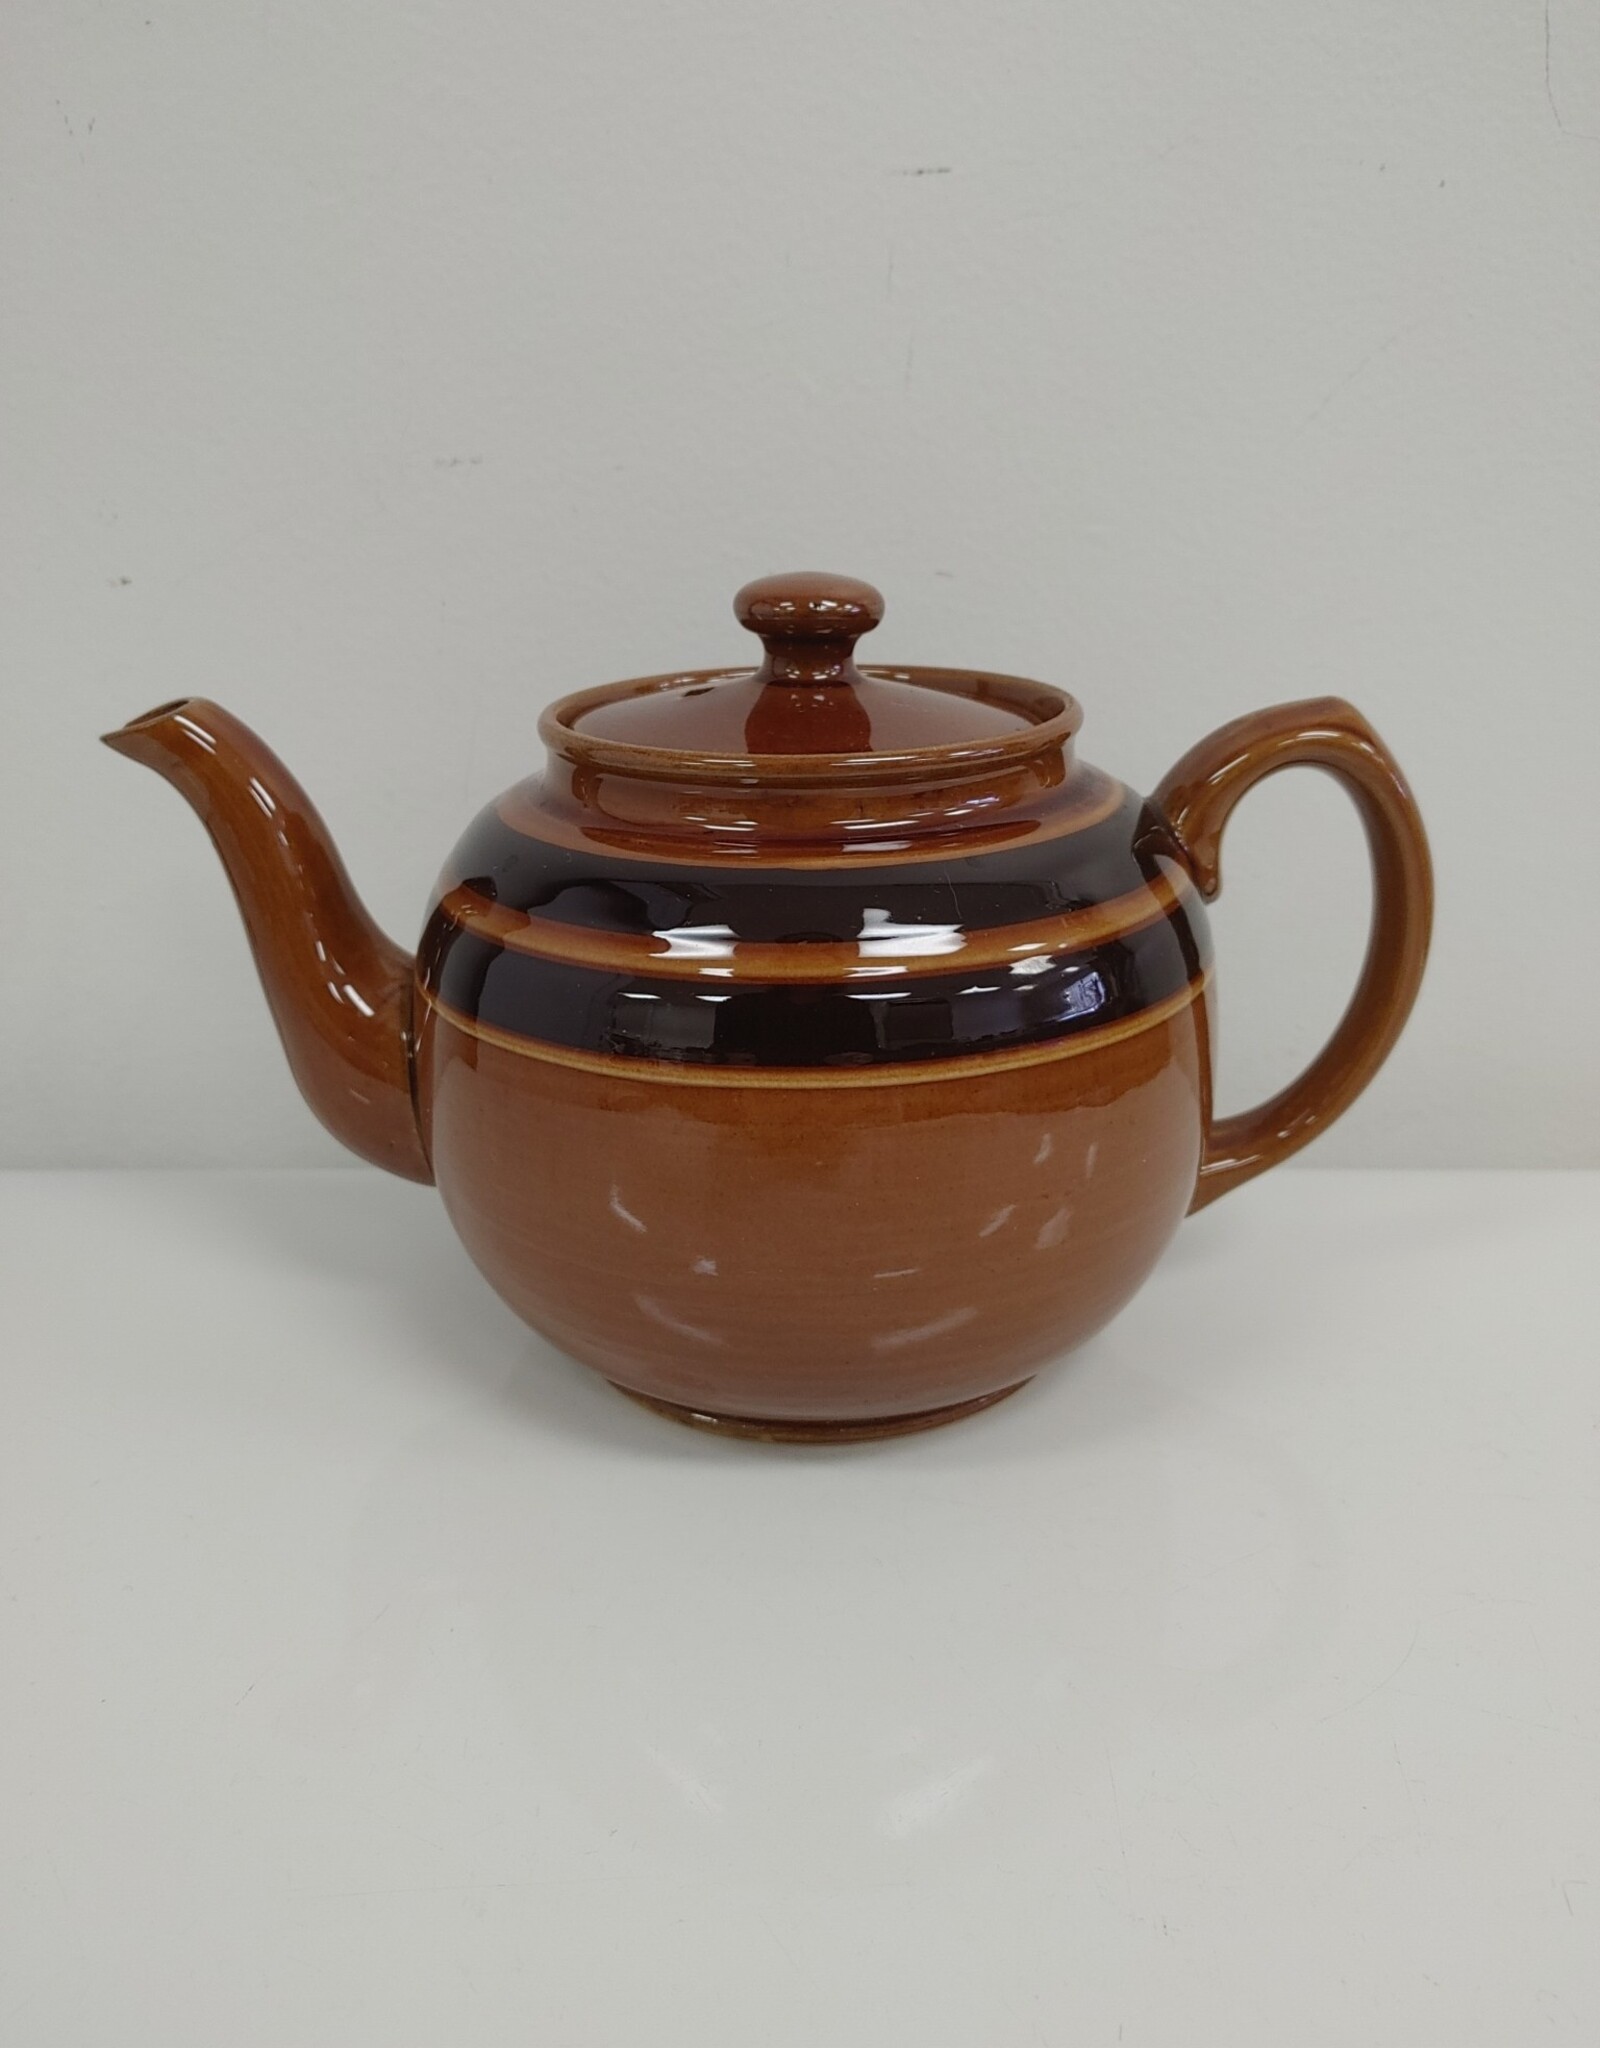 Vintage Sadler Brown Striped Teapot - England